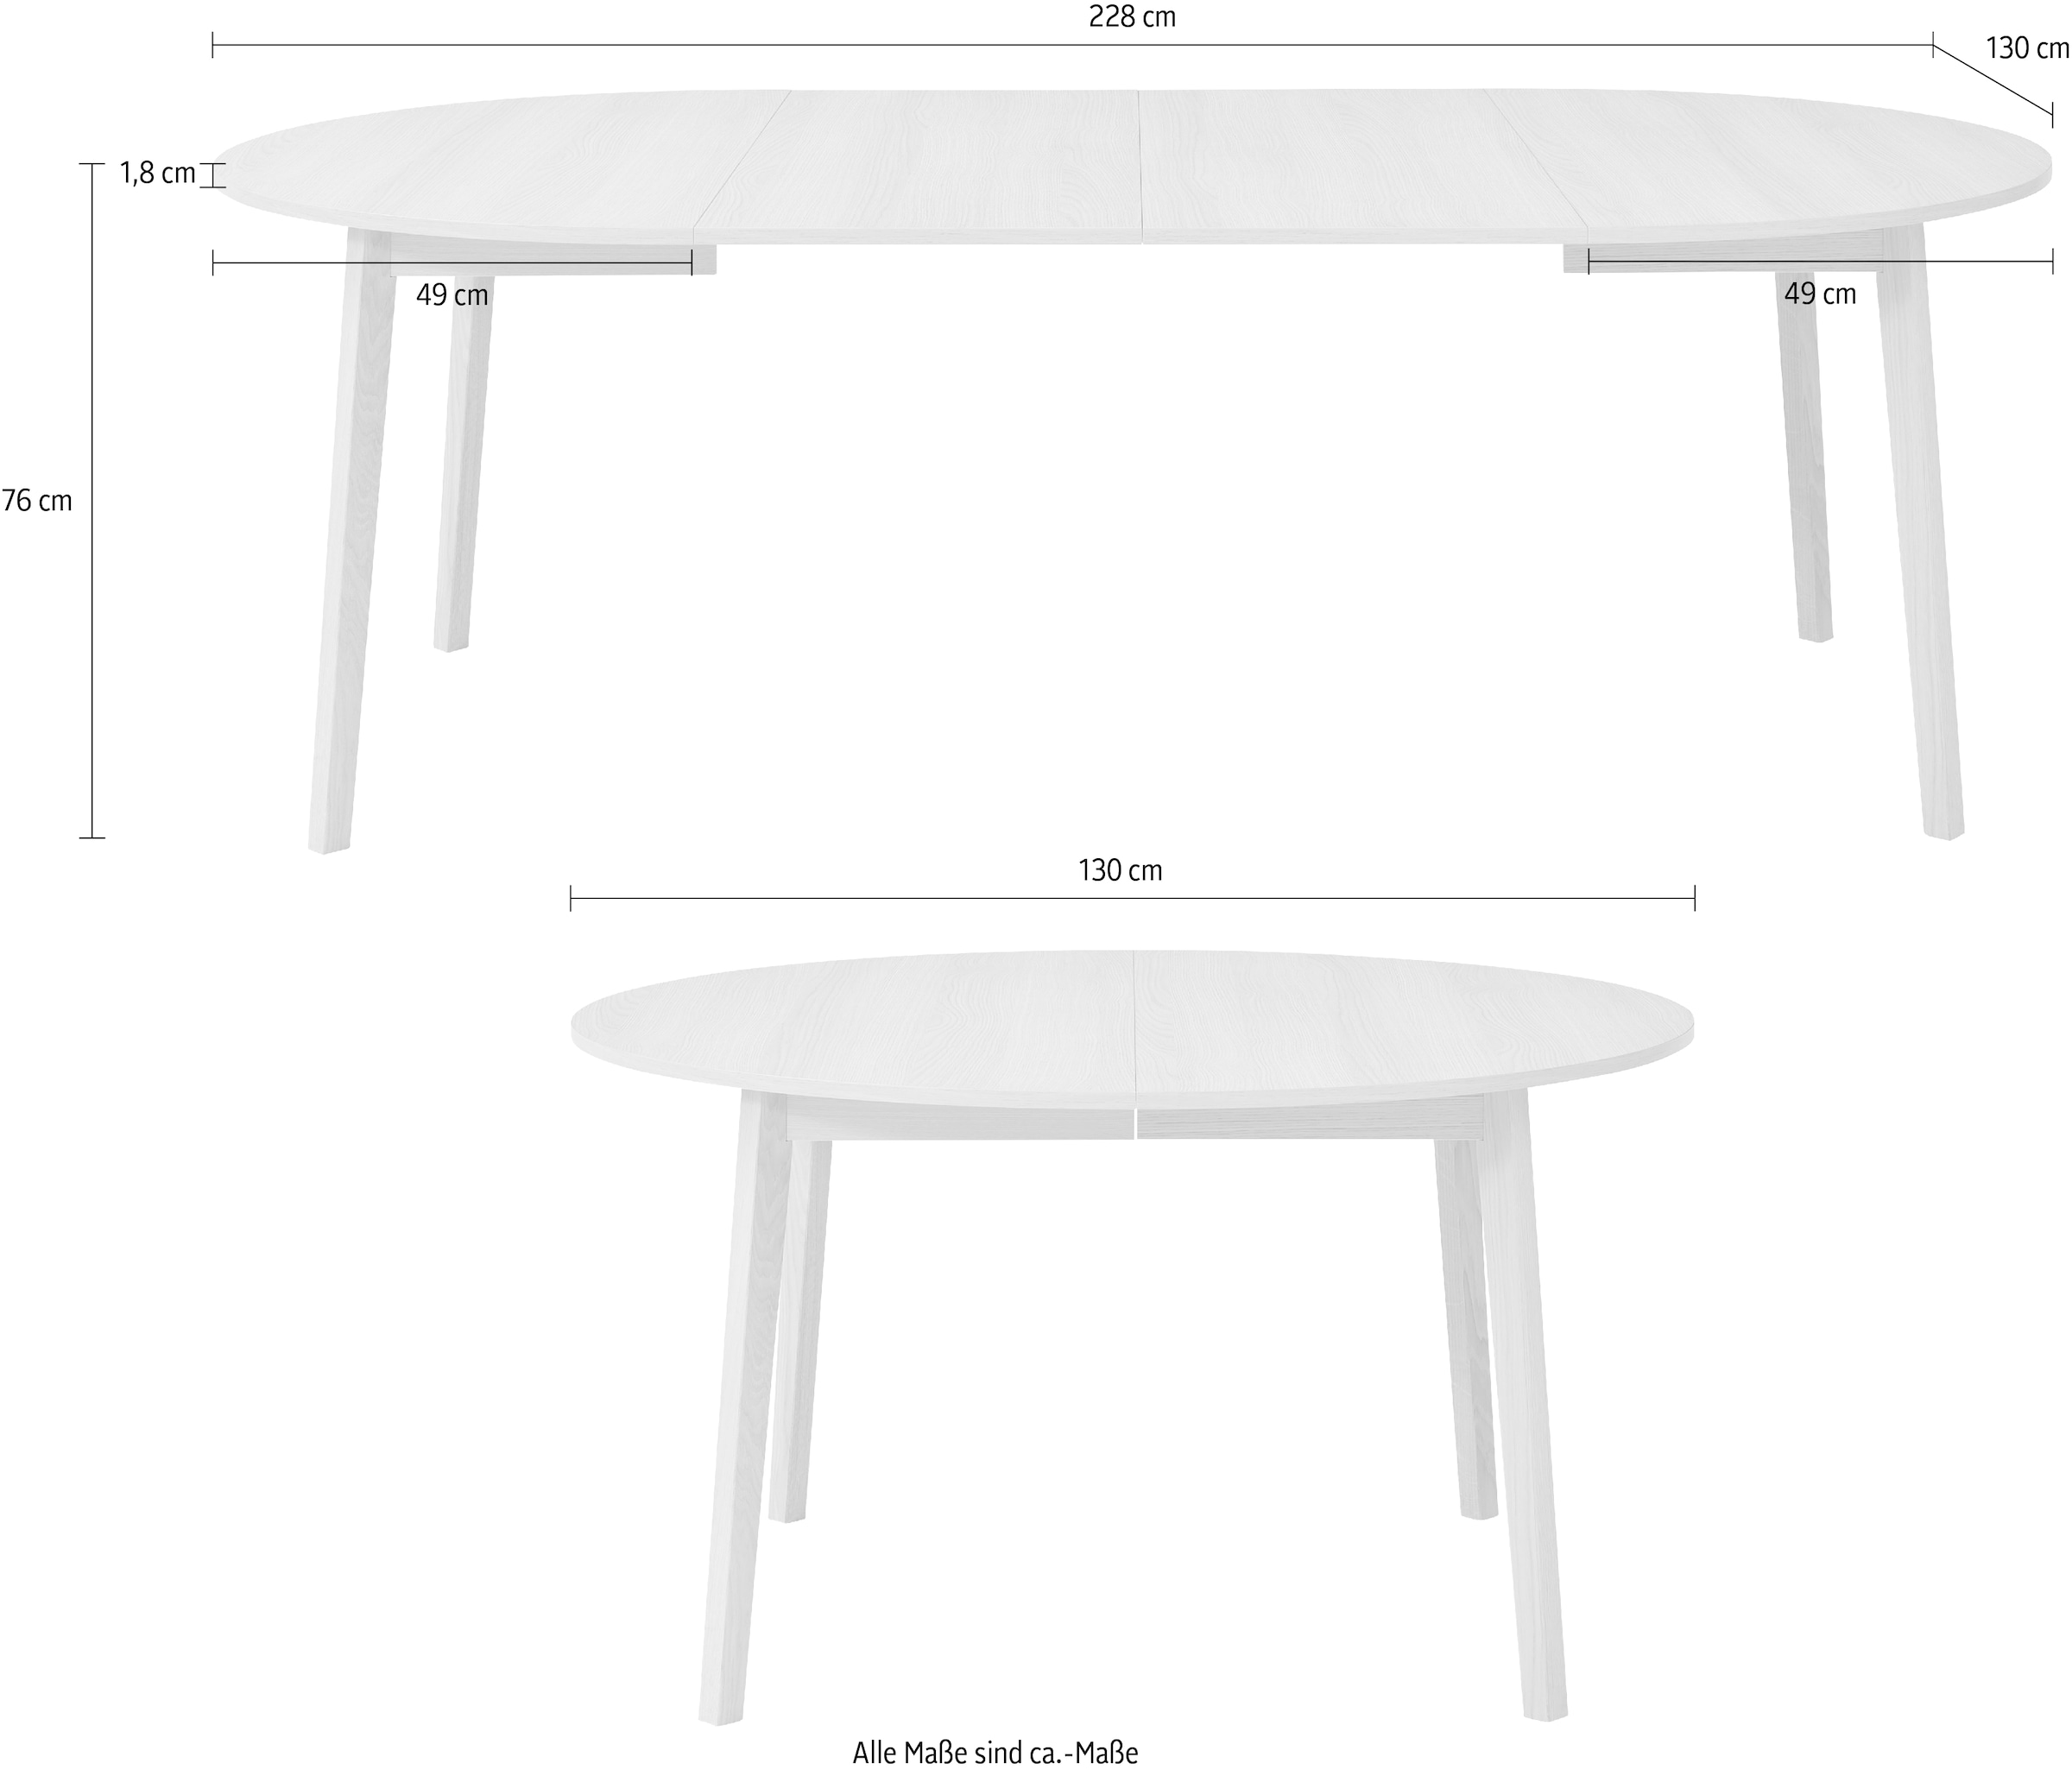 Hammel Furniture kaufen Esstisch | Gestell by Hammel 2 BAUR inklusive »Basic Einlegeplatten Single«, aus cm, Massivholz, Ø130/228